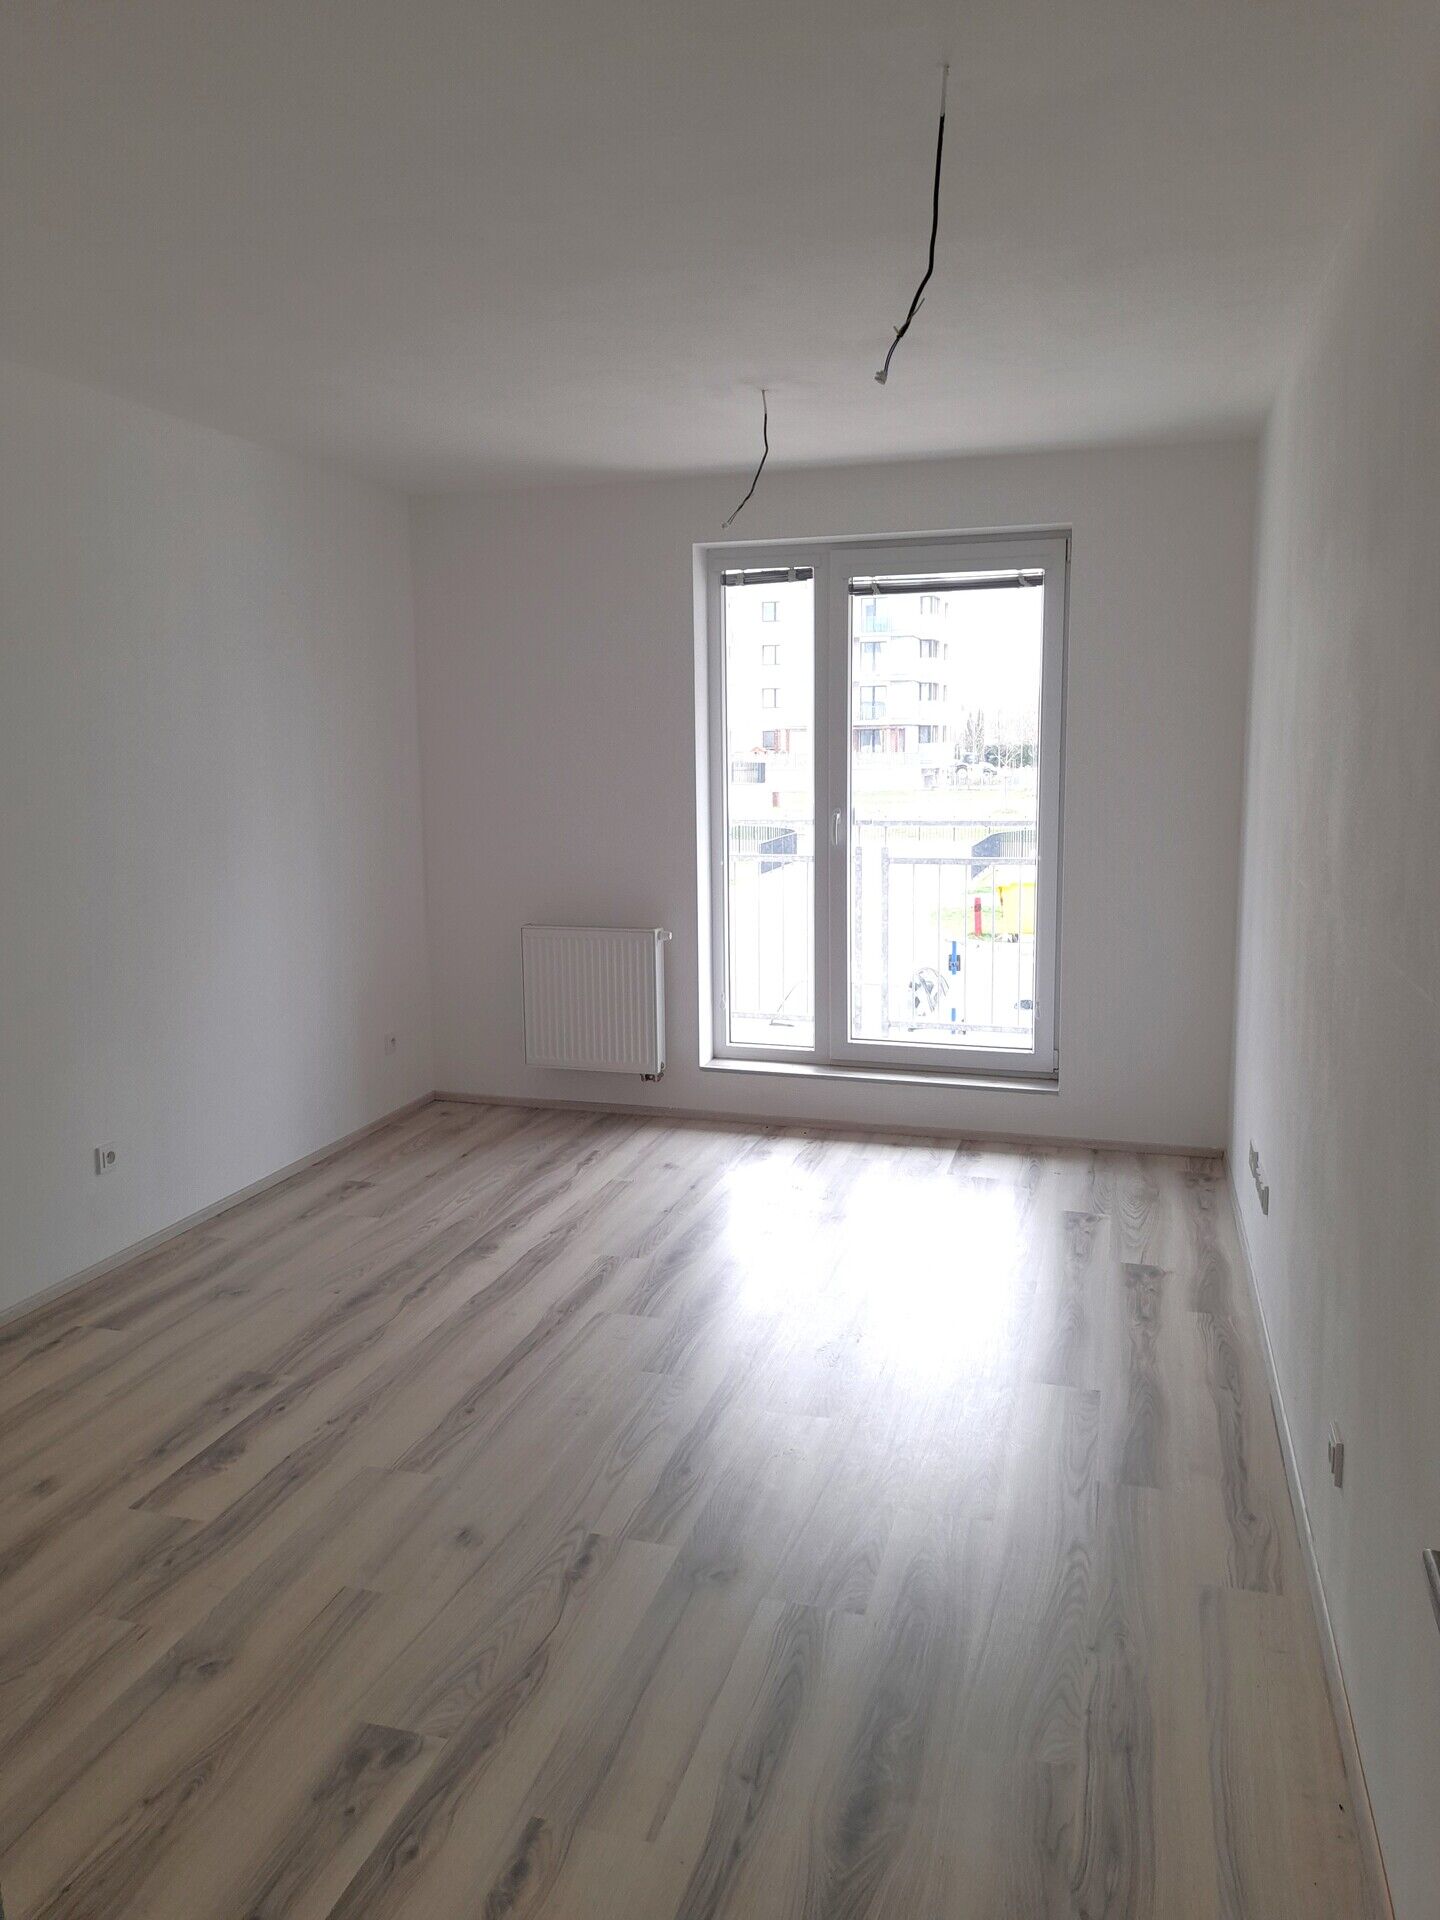 Prodej hezkého nového bytu 2+kk, 50 m2, s terasou 8 m2 v širším centru Poděbrad, okr. Nymburk